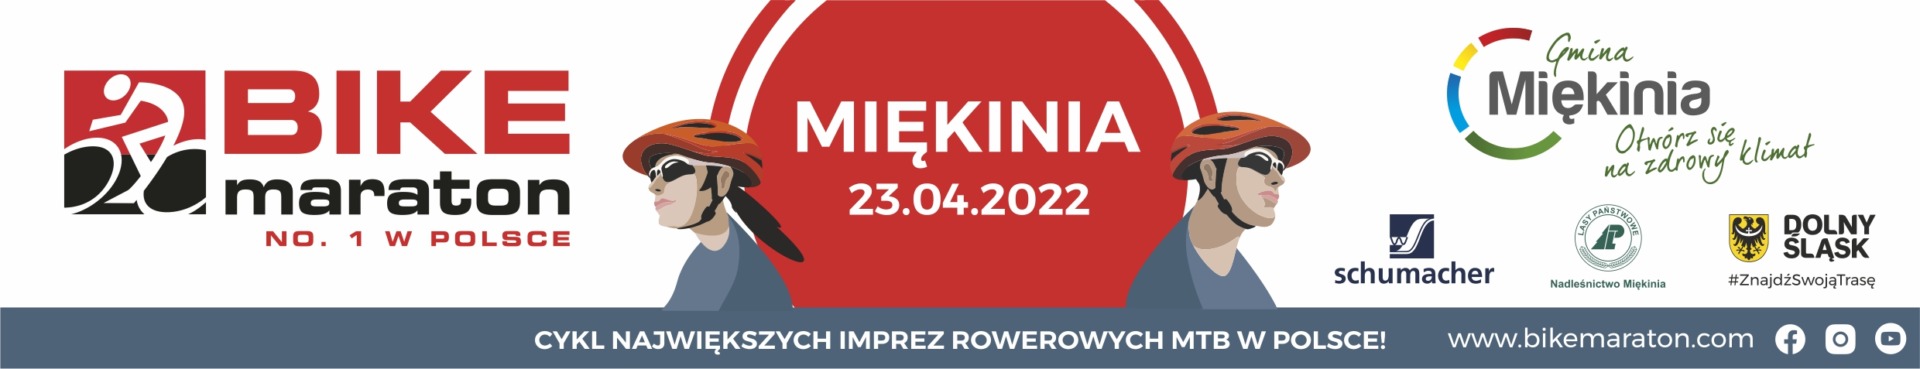 bike-maraton-2022-miekinia-banner